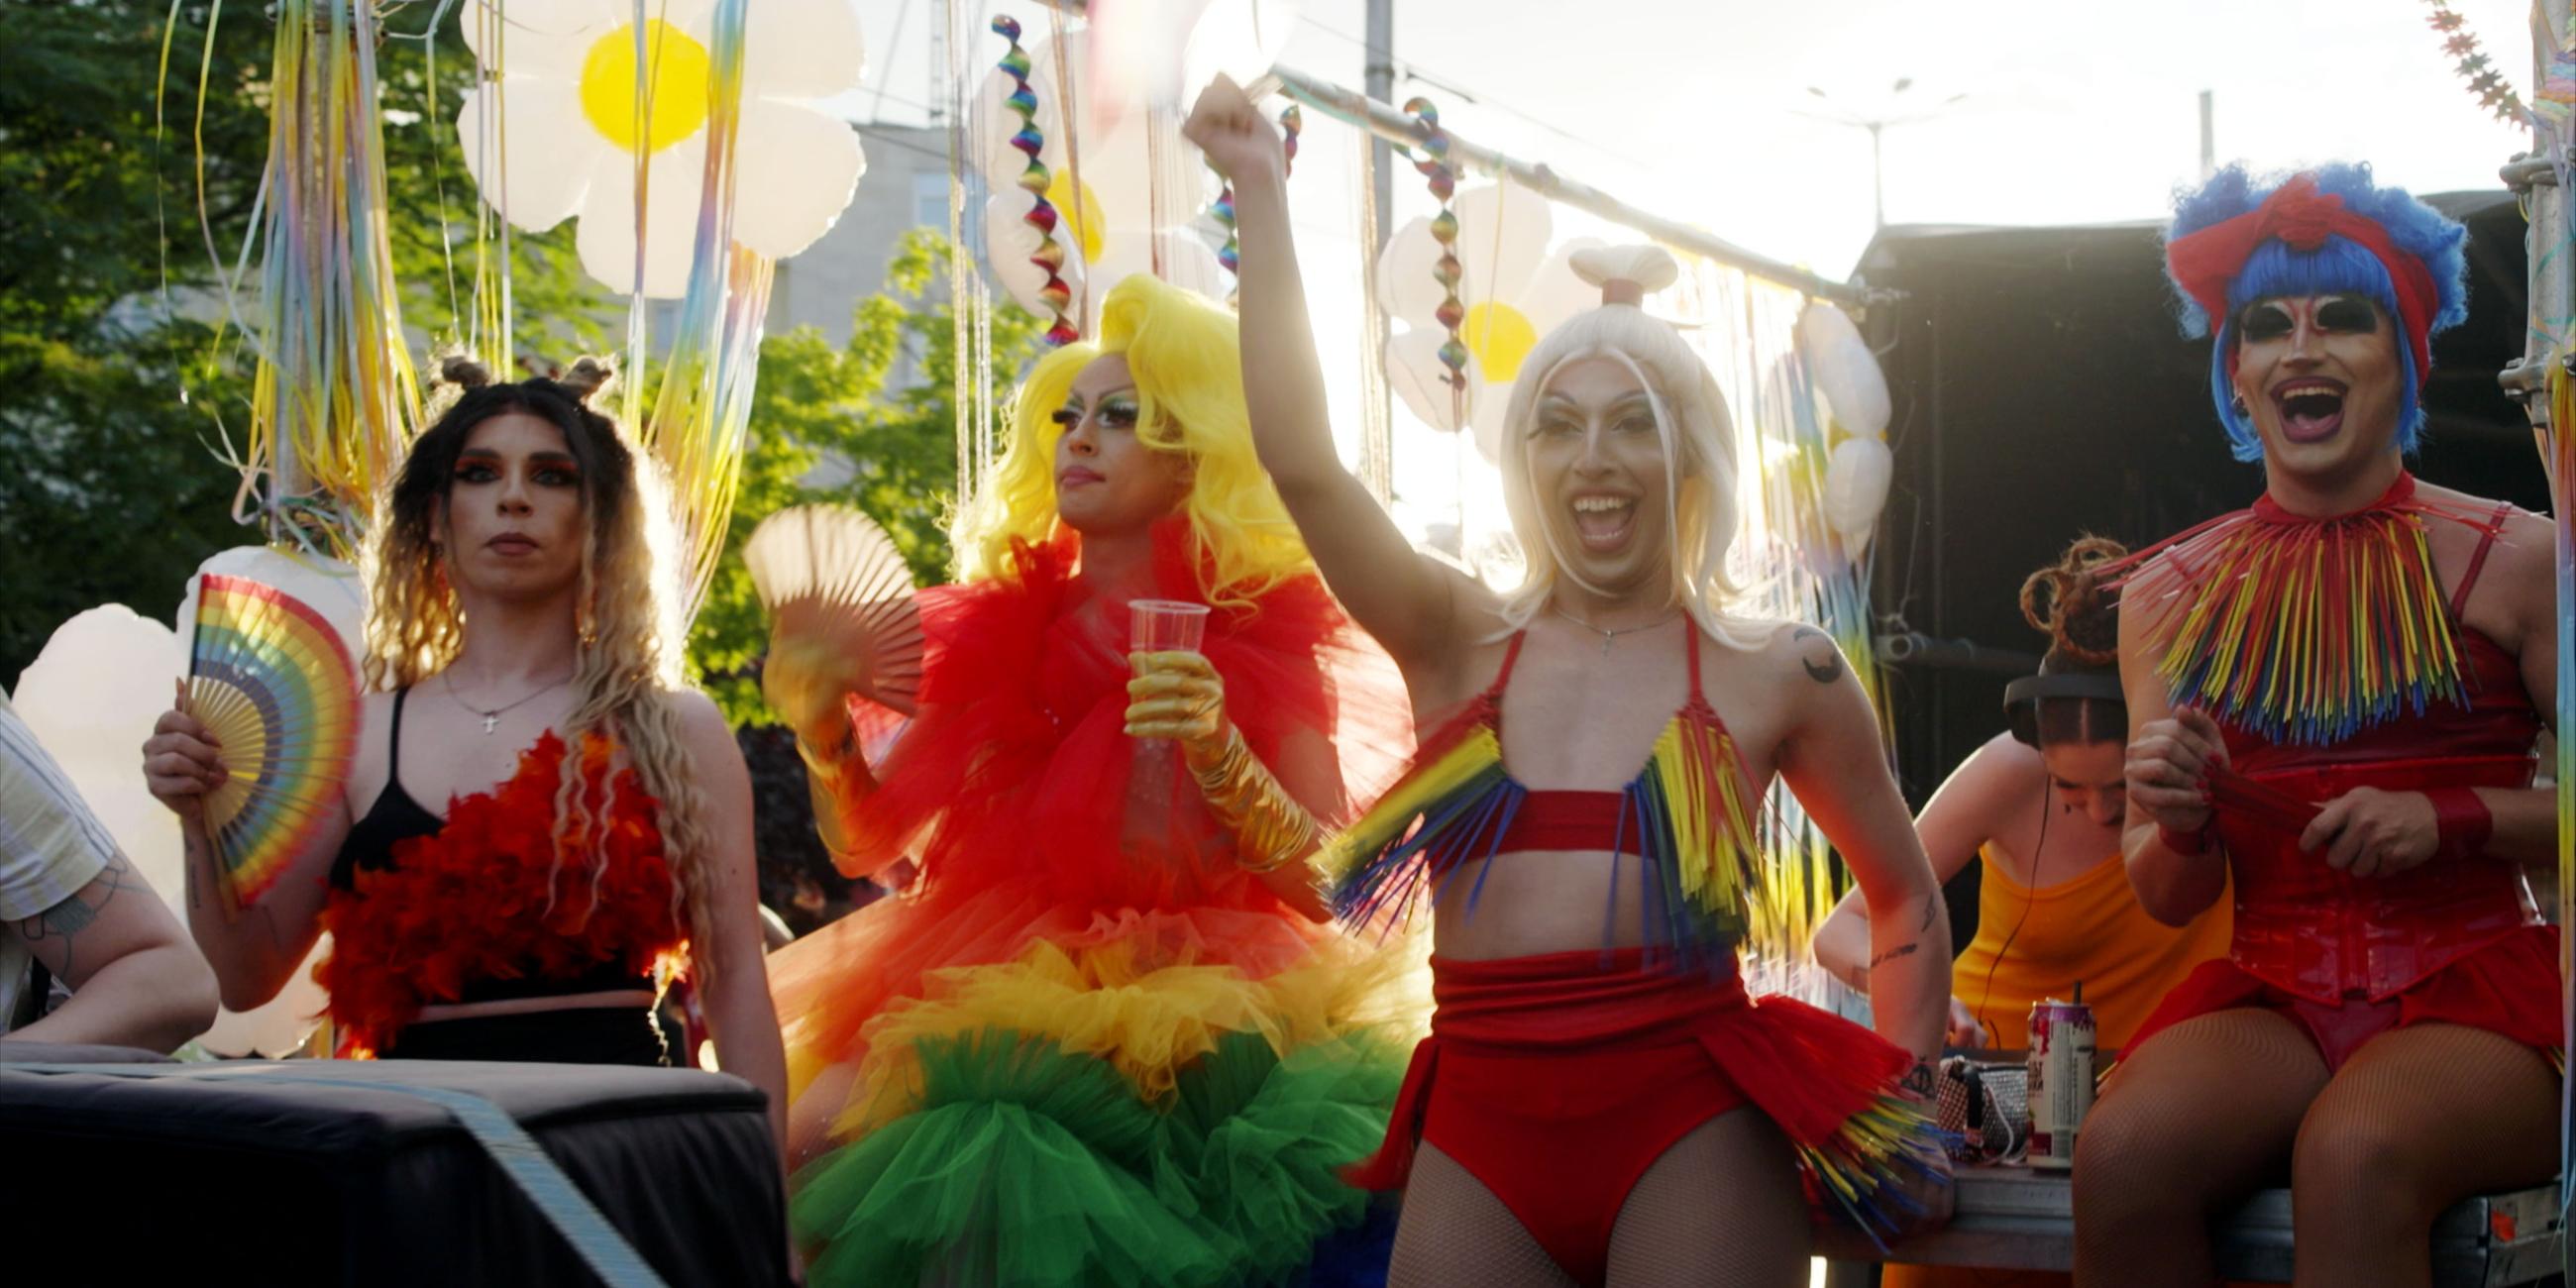 Vier Dragqueens feiern auf einem Festwagen die Pride Parade. Sie tragen bunte Perücken und Kostüme.